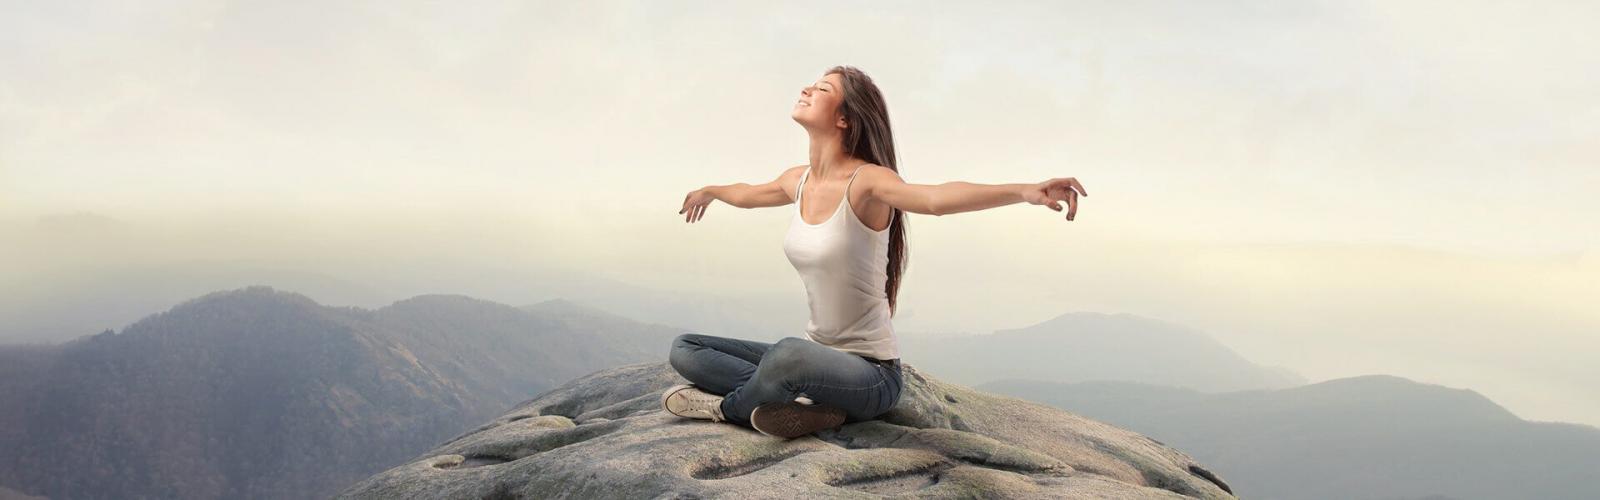 Девушка медитирует на вершине горы